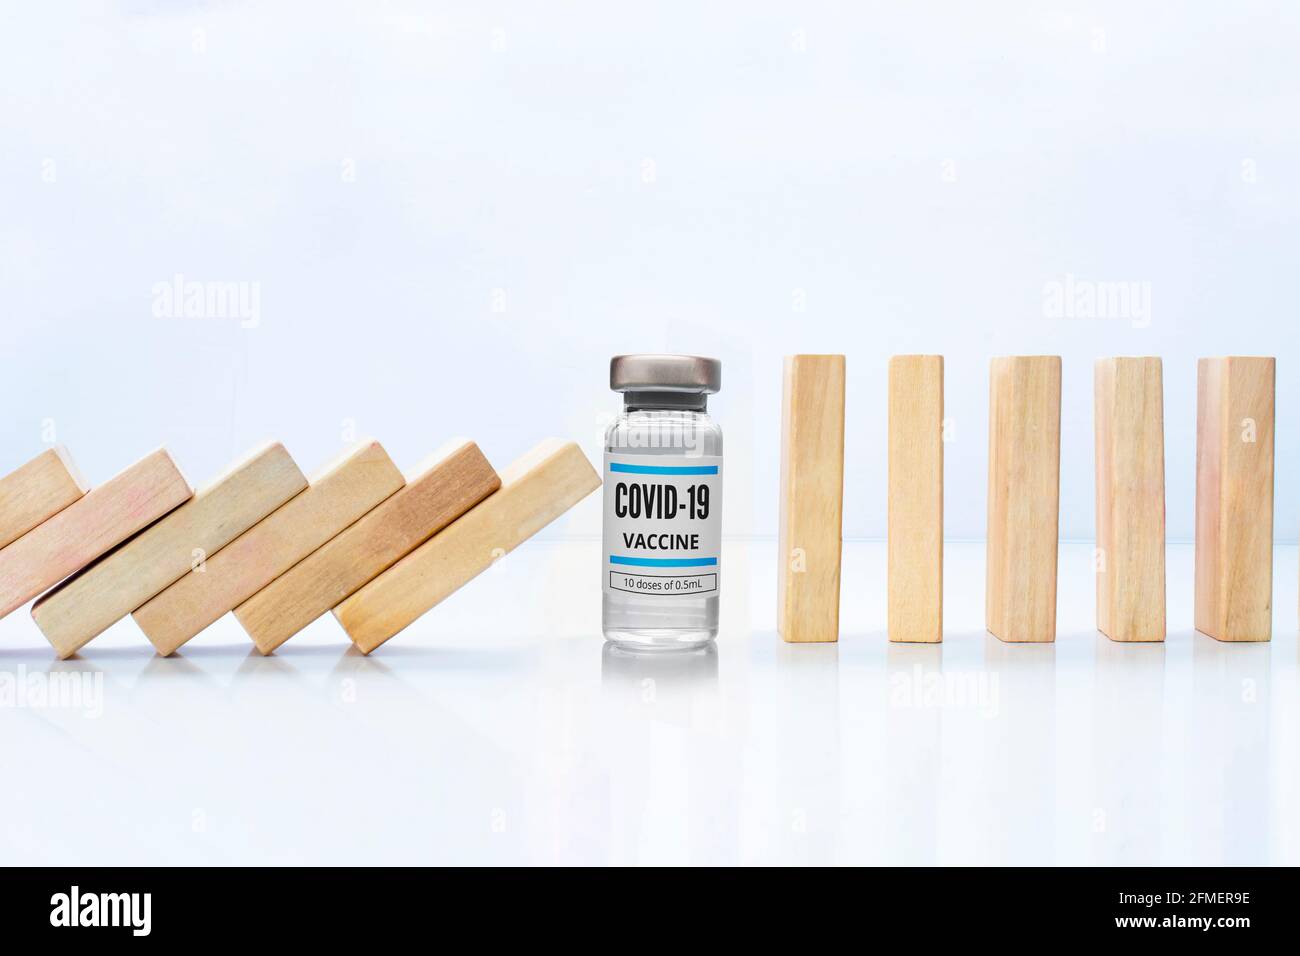 Pezzi di legno effetto domino arresto caduta con un vaccino Covid-19 flaconcino, accanto allo stand pezzi di legno concetto: Vaccino Covid-19 fermare crisi e rischio Foto Stock